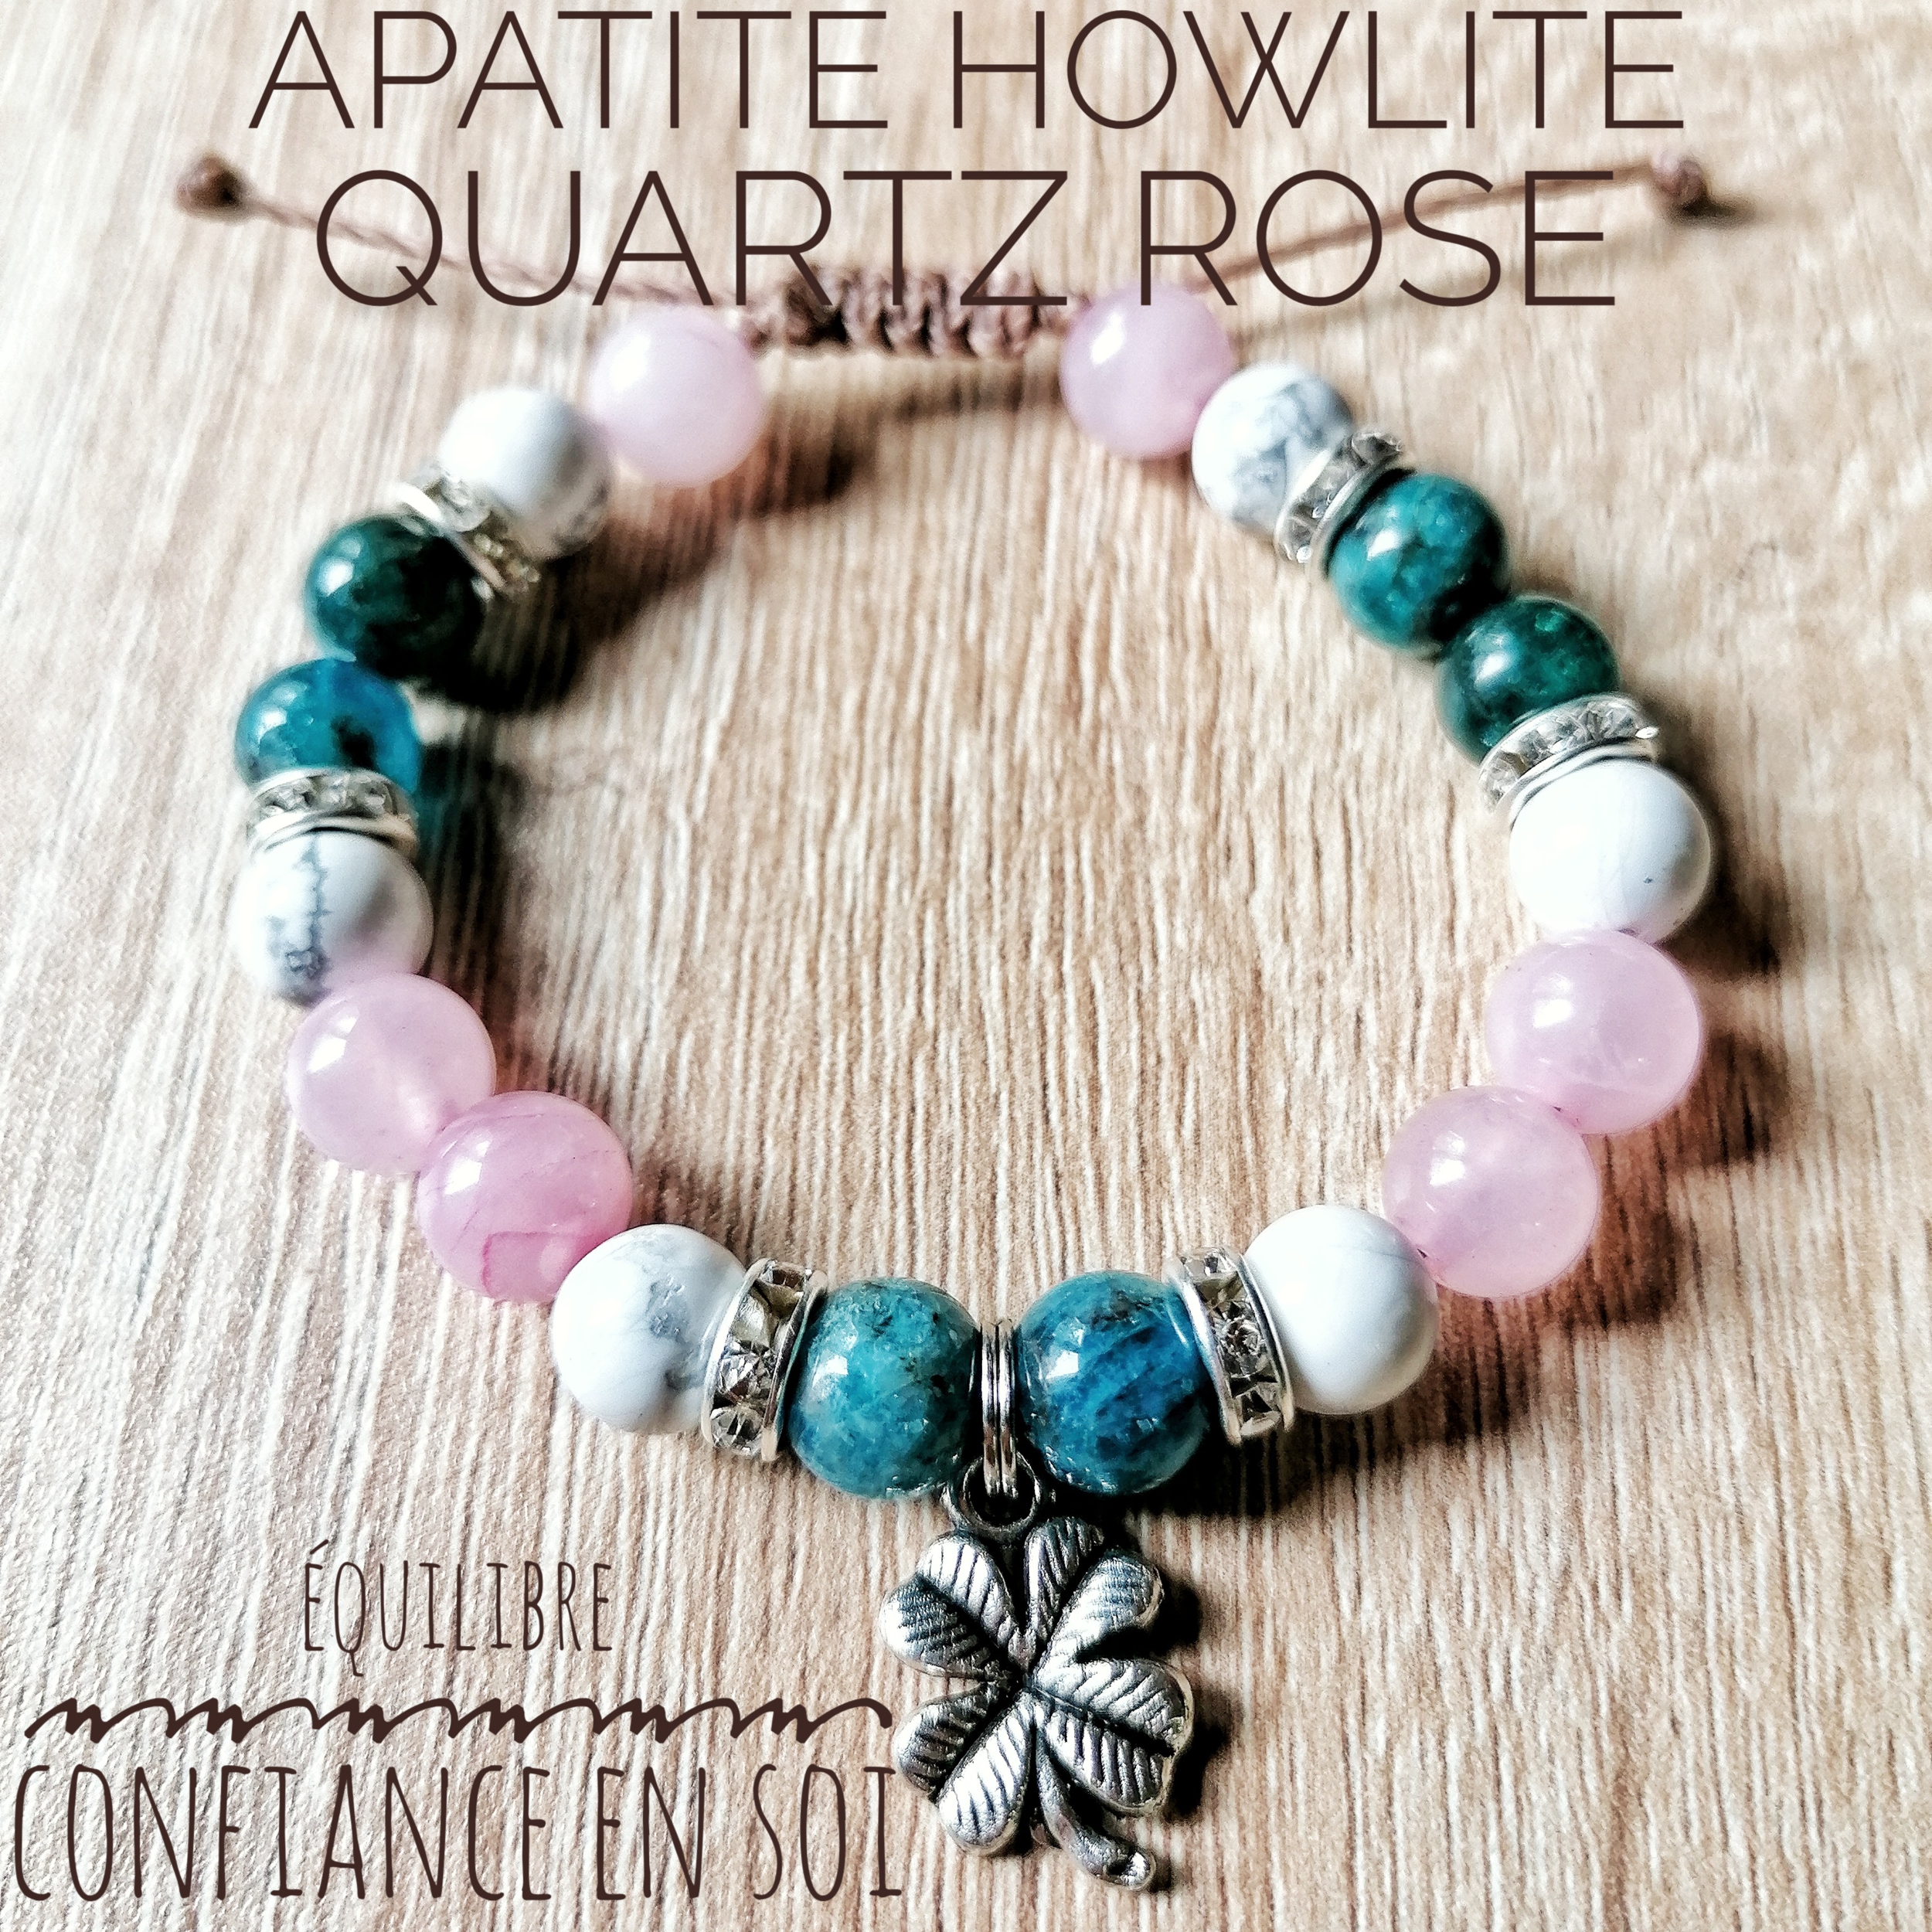 Bracelet Équilibre & Confiance en soi Apatite, Quartz rose & Howlite